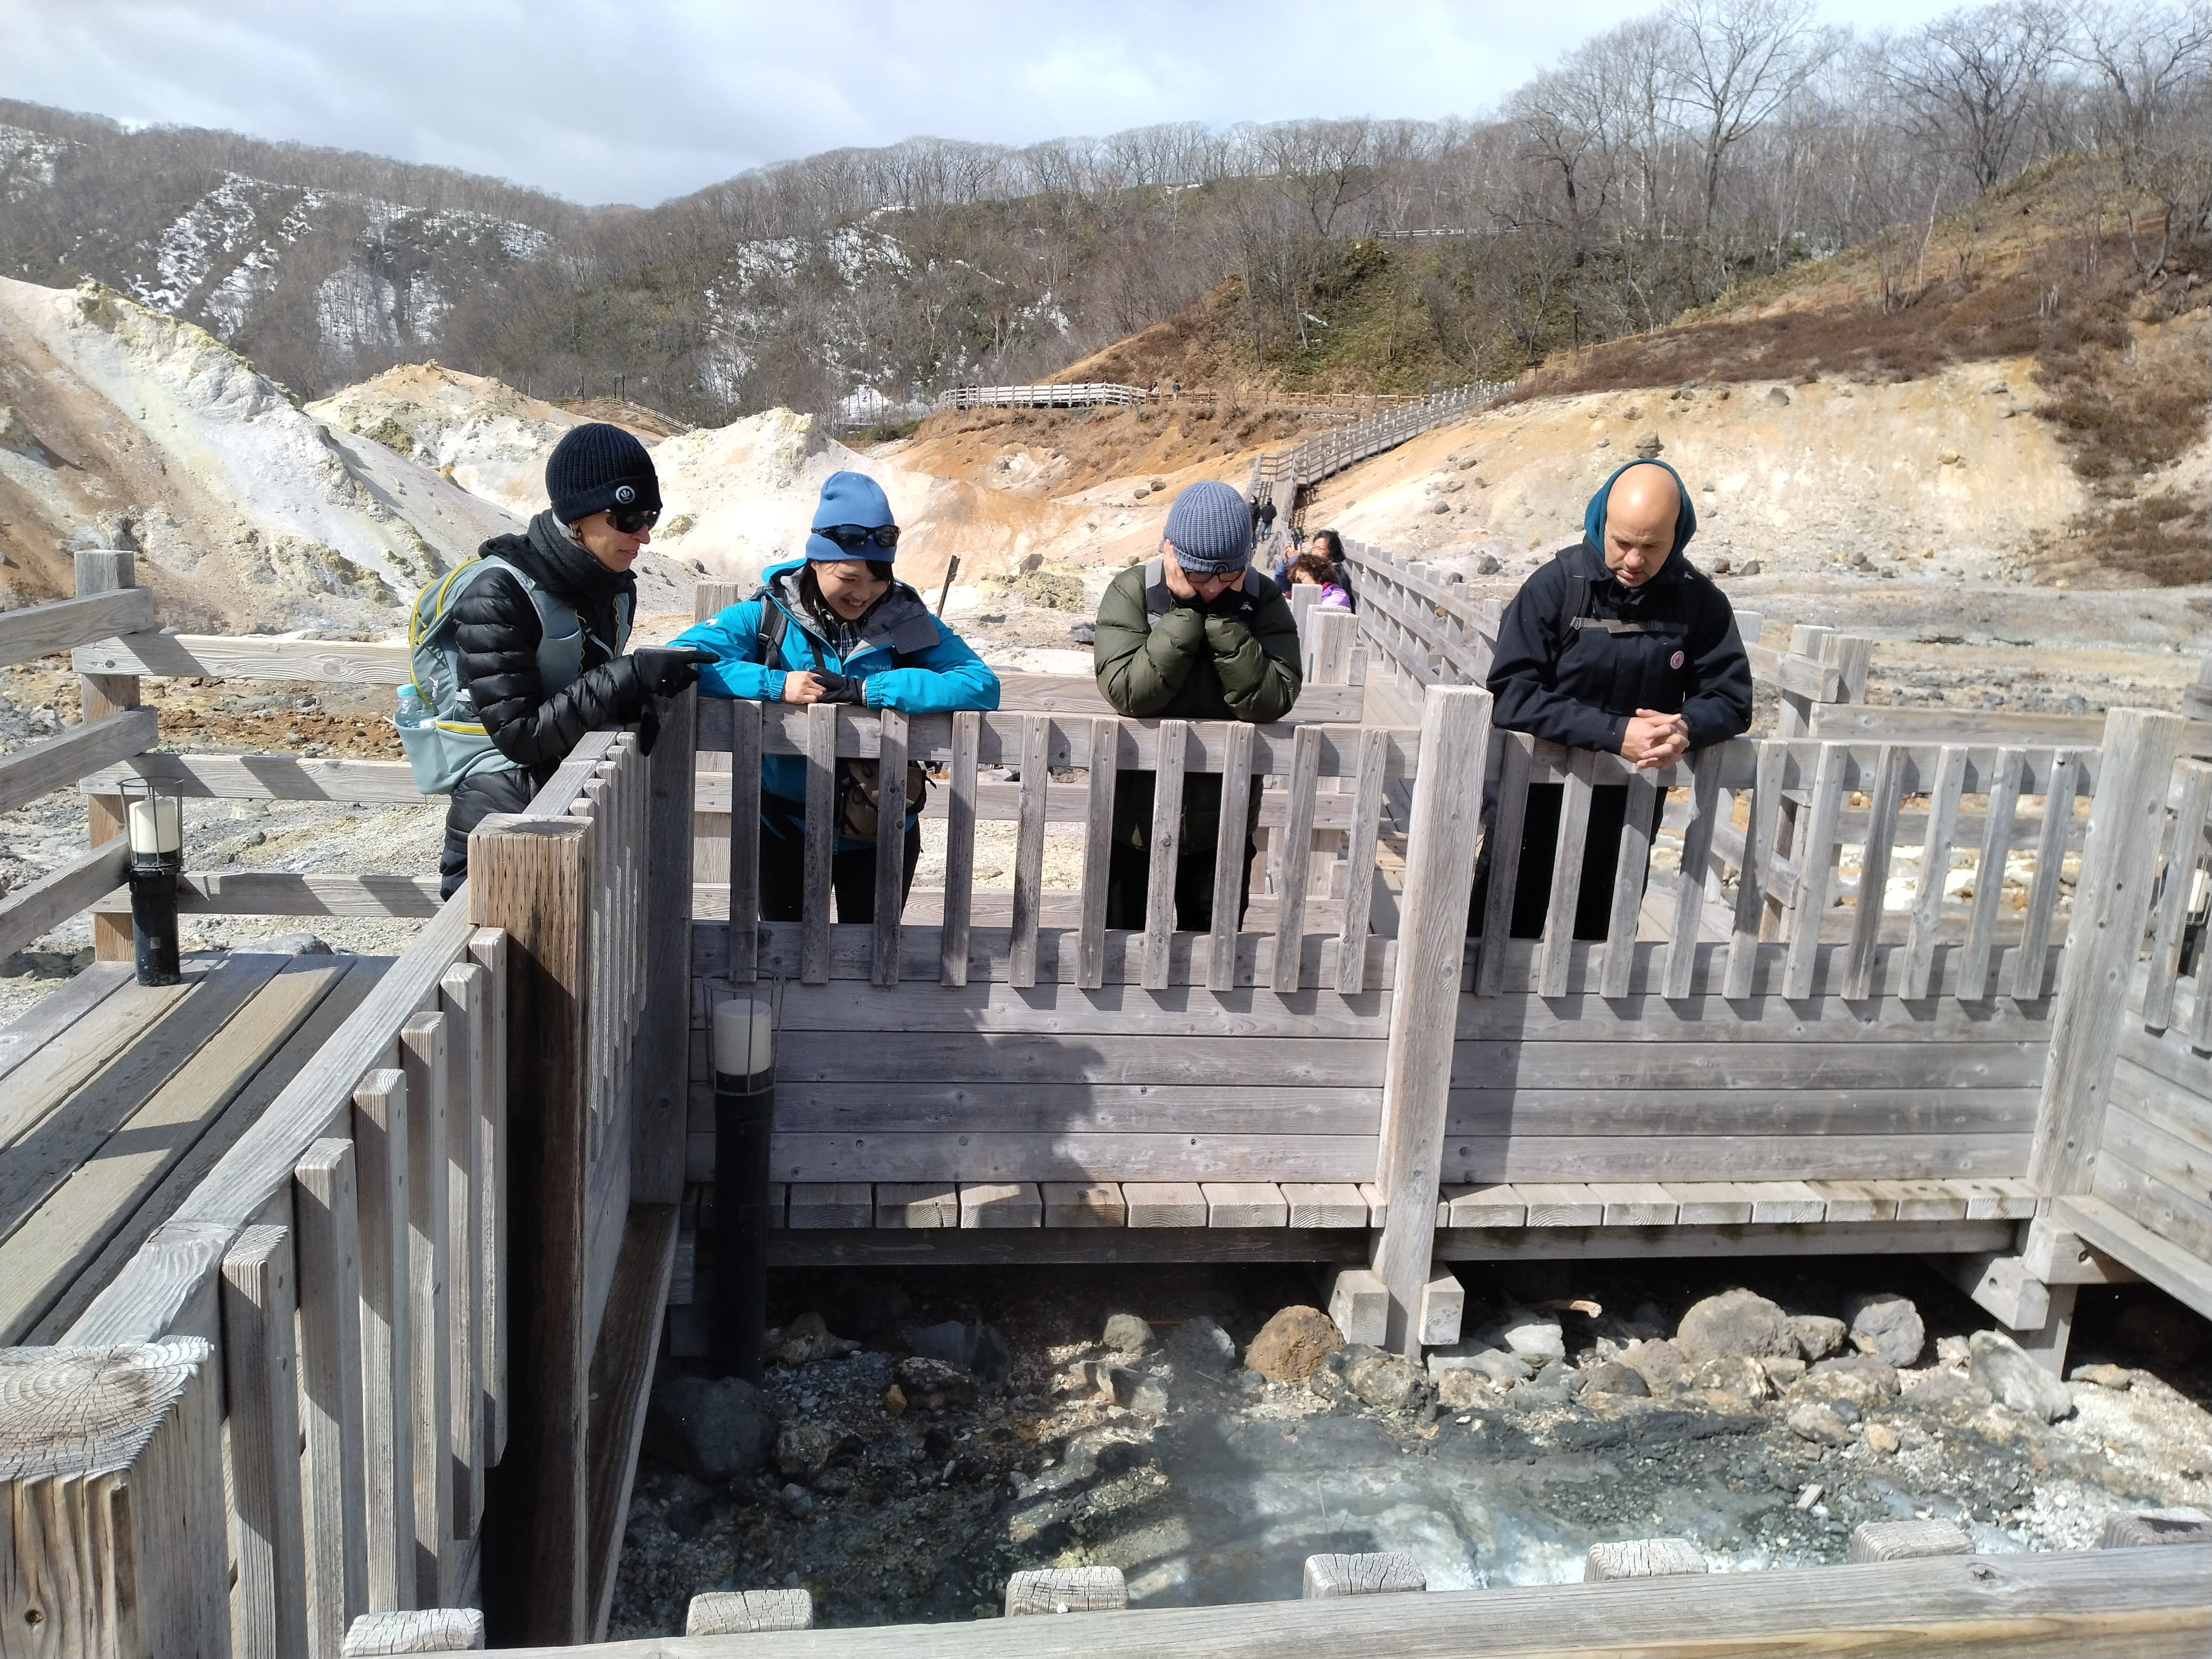 Yuka and three guests look into a hot spring pool at Noboribetsu Hell Valley.